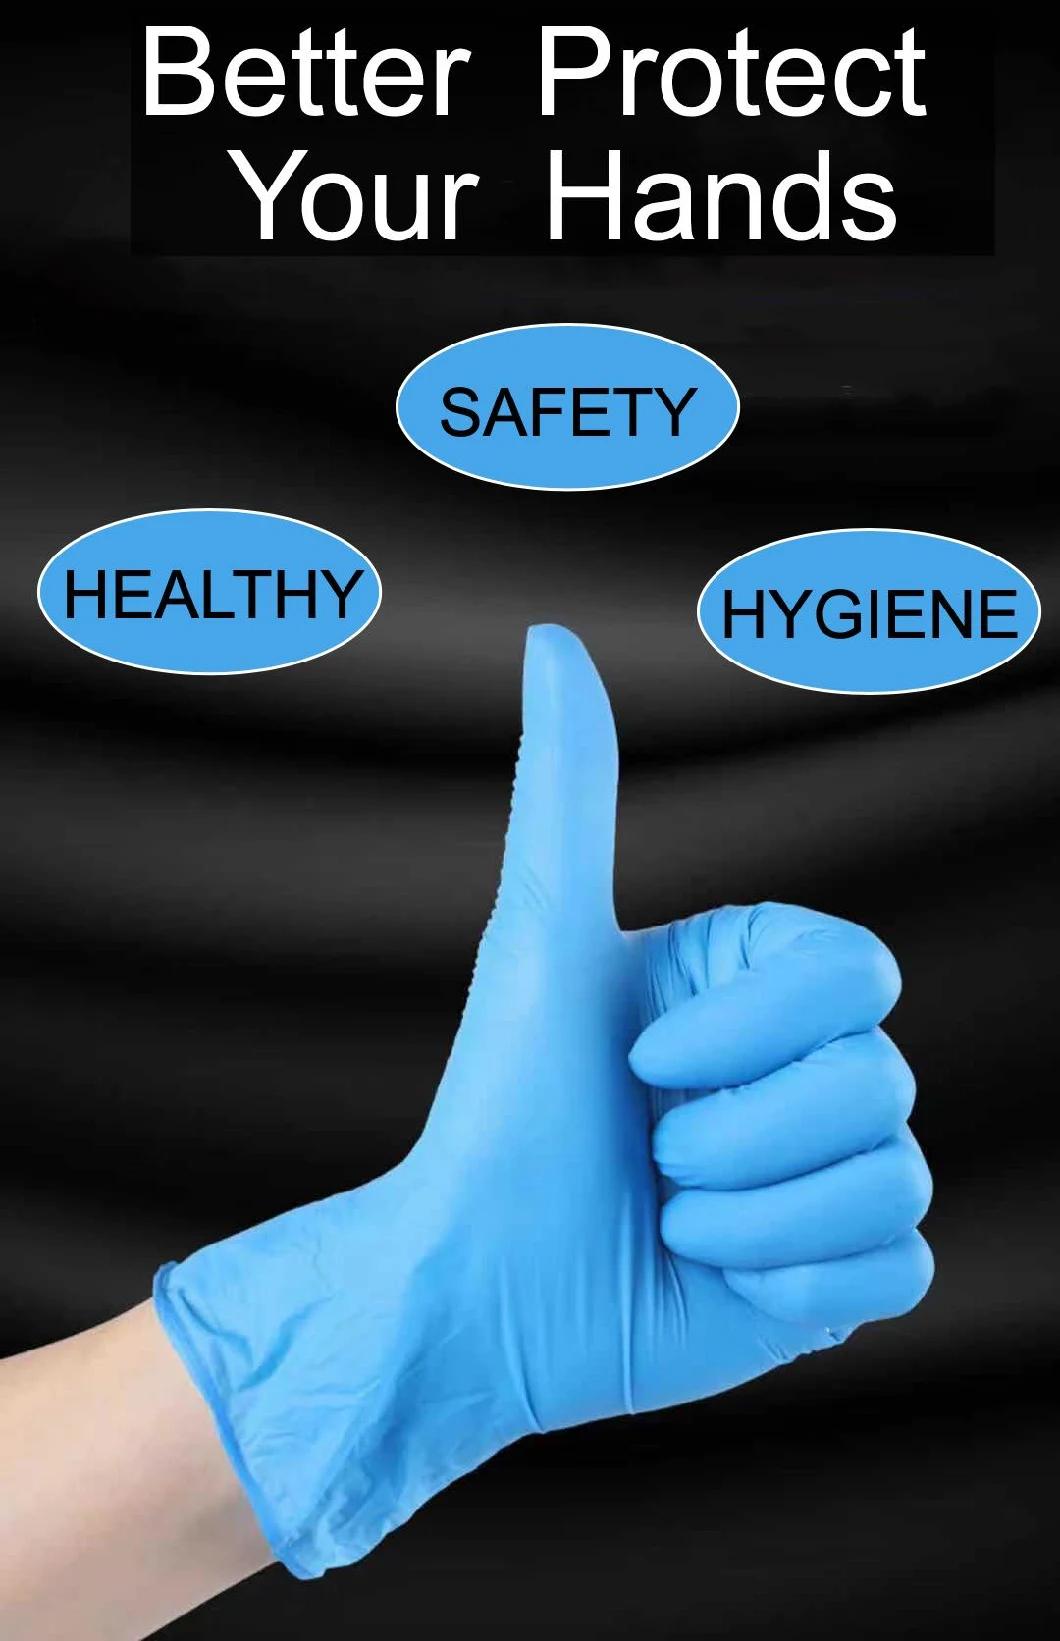 Disposable Nitrile Blend Gloves Powder Free Medical Nitrile Gloves